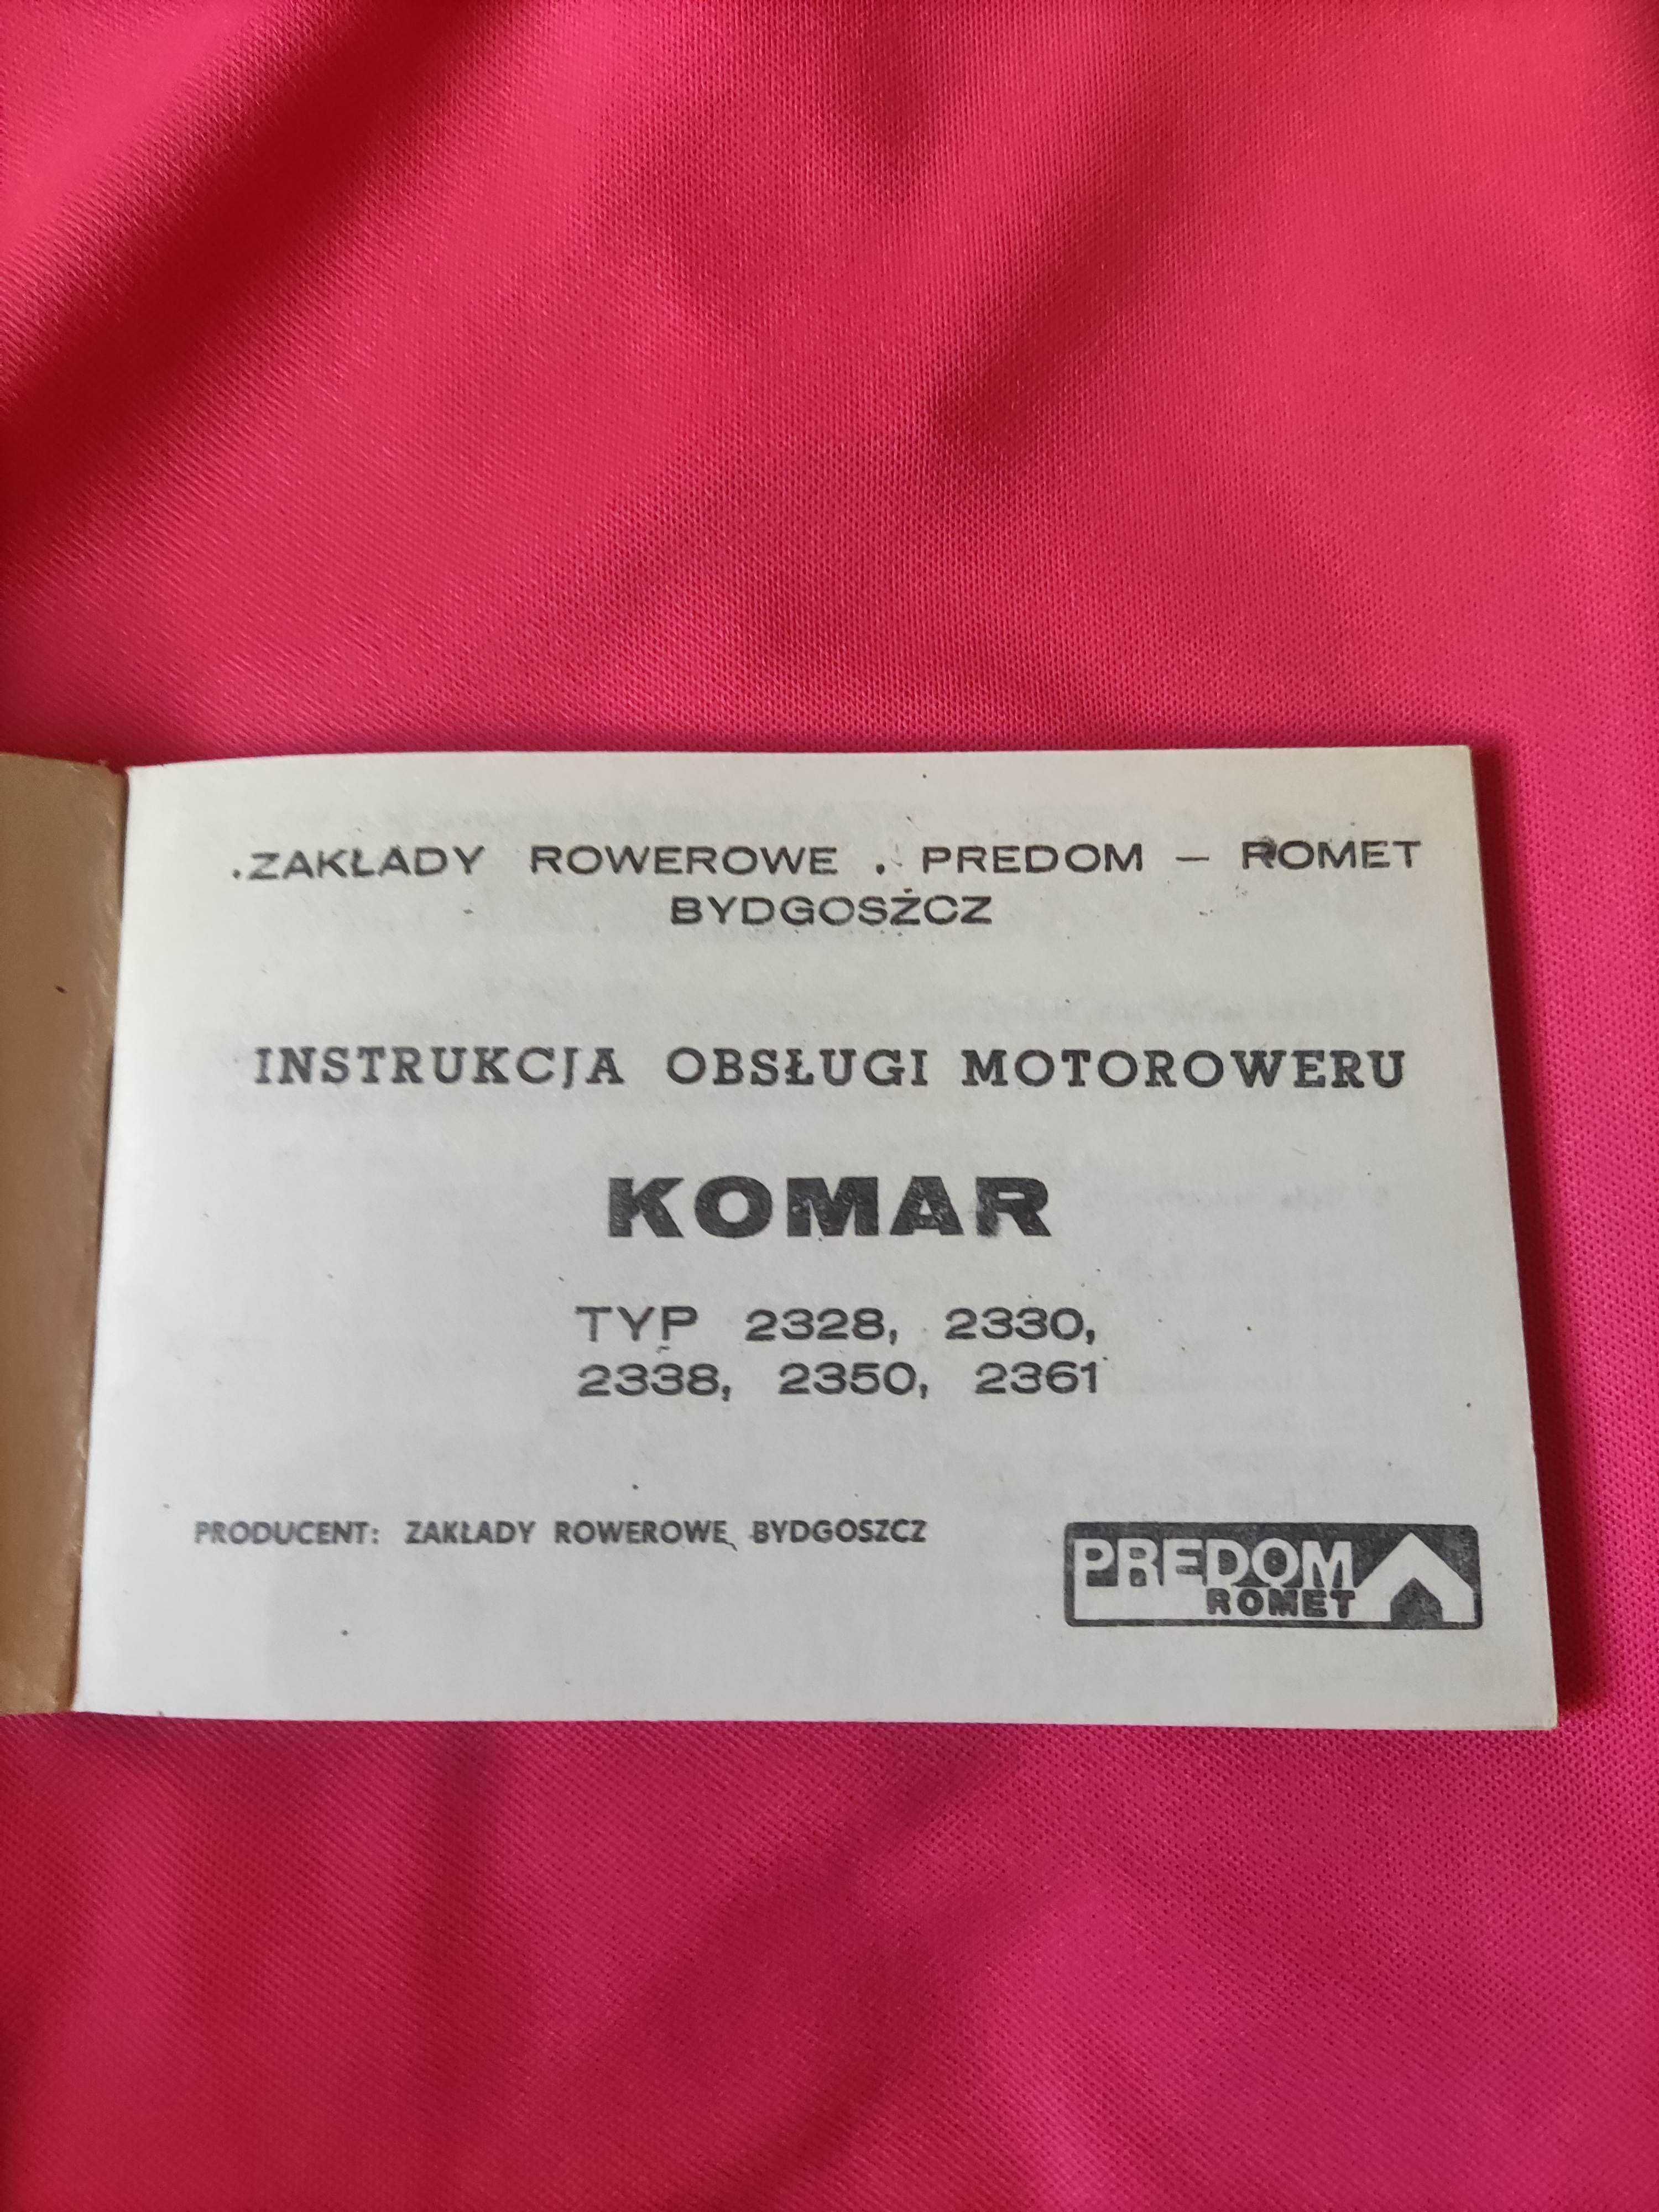 Instrukcja obsługi motoroweru Komar Typ 2328, 2338, 
Rok wydania 1975